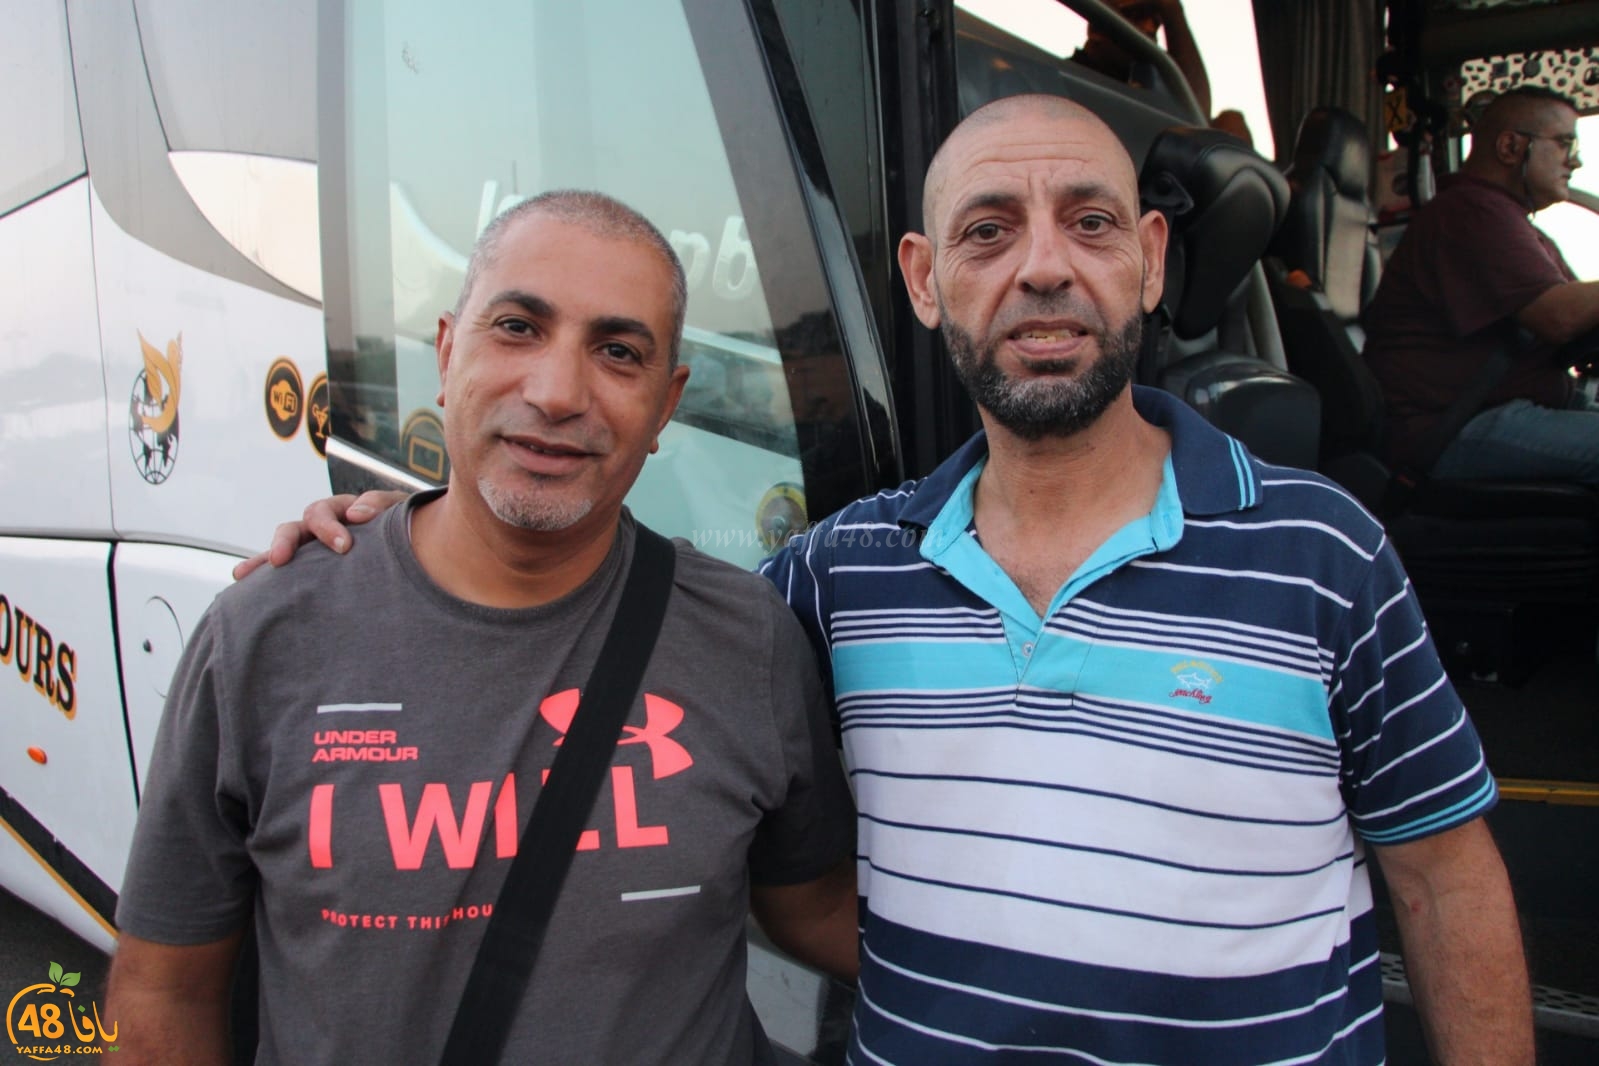 بالصور: عودة الفوج الثاني من حجاج مدينة يافا الى ديارهم سالمين 